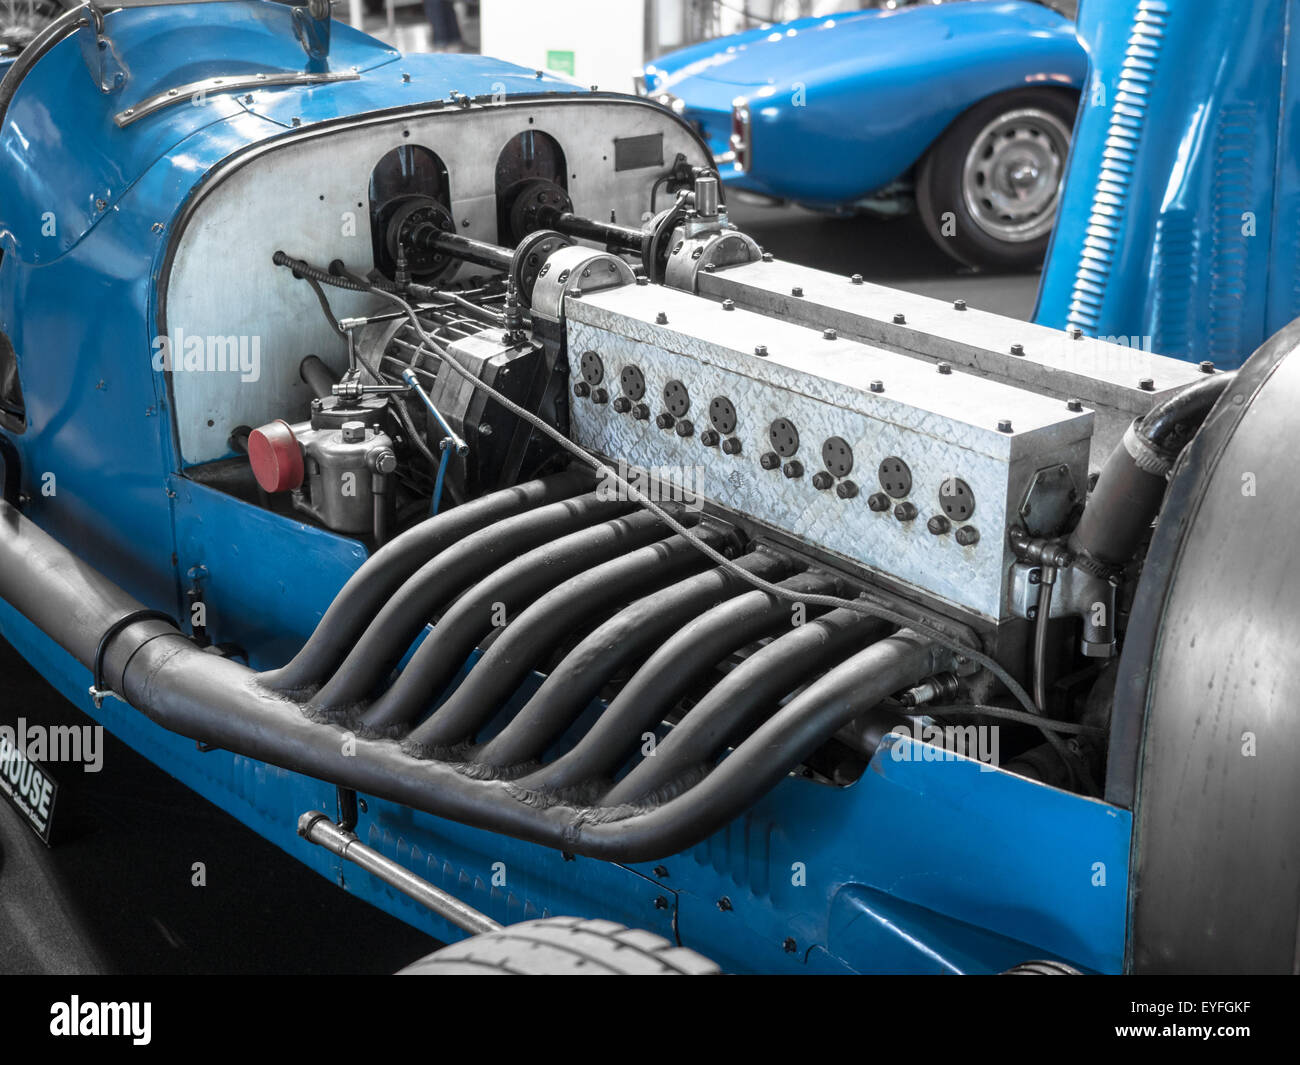 Dettaglio del motore e le tubazioni di scarico di un blu vintage racing car. Foto Stock